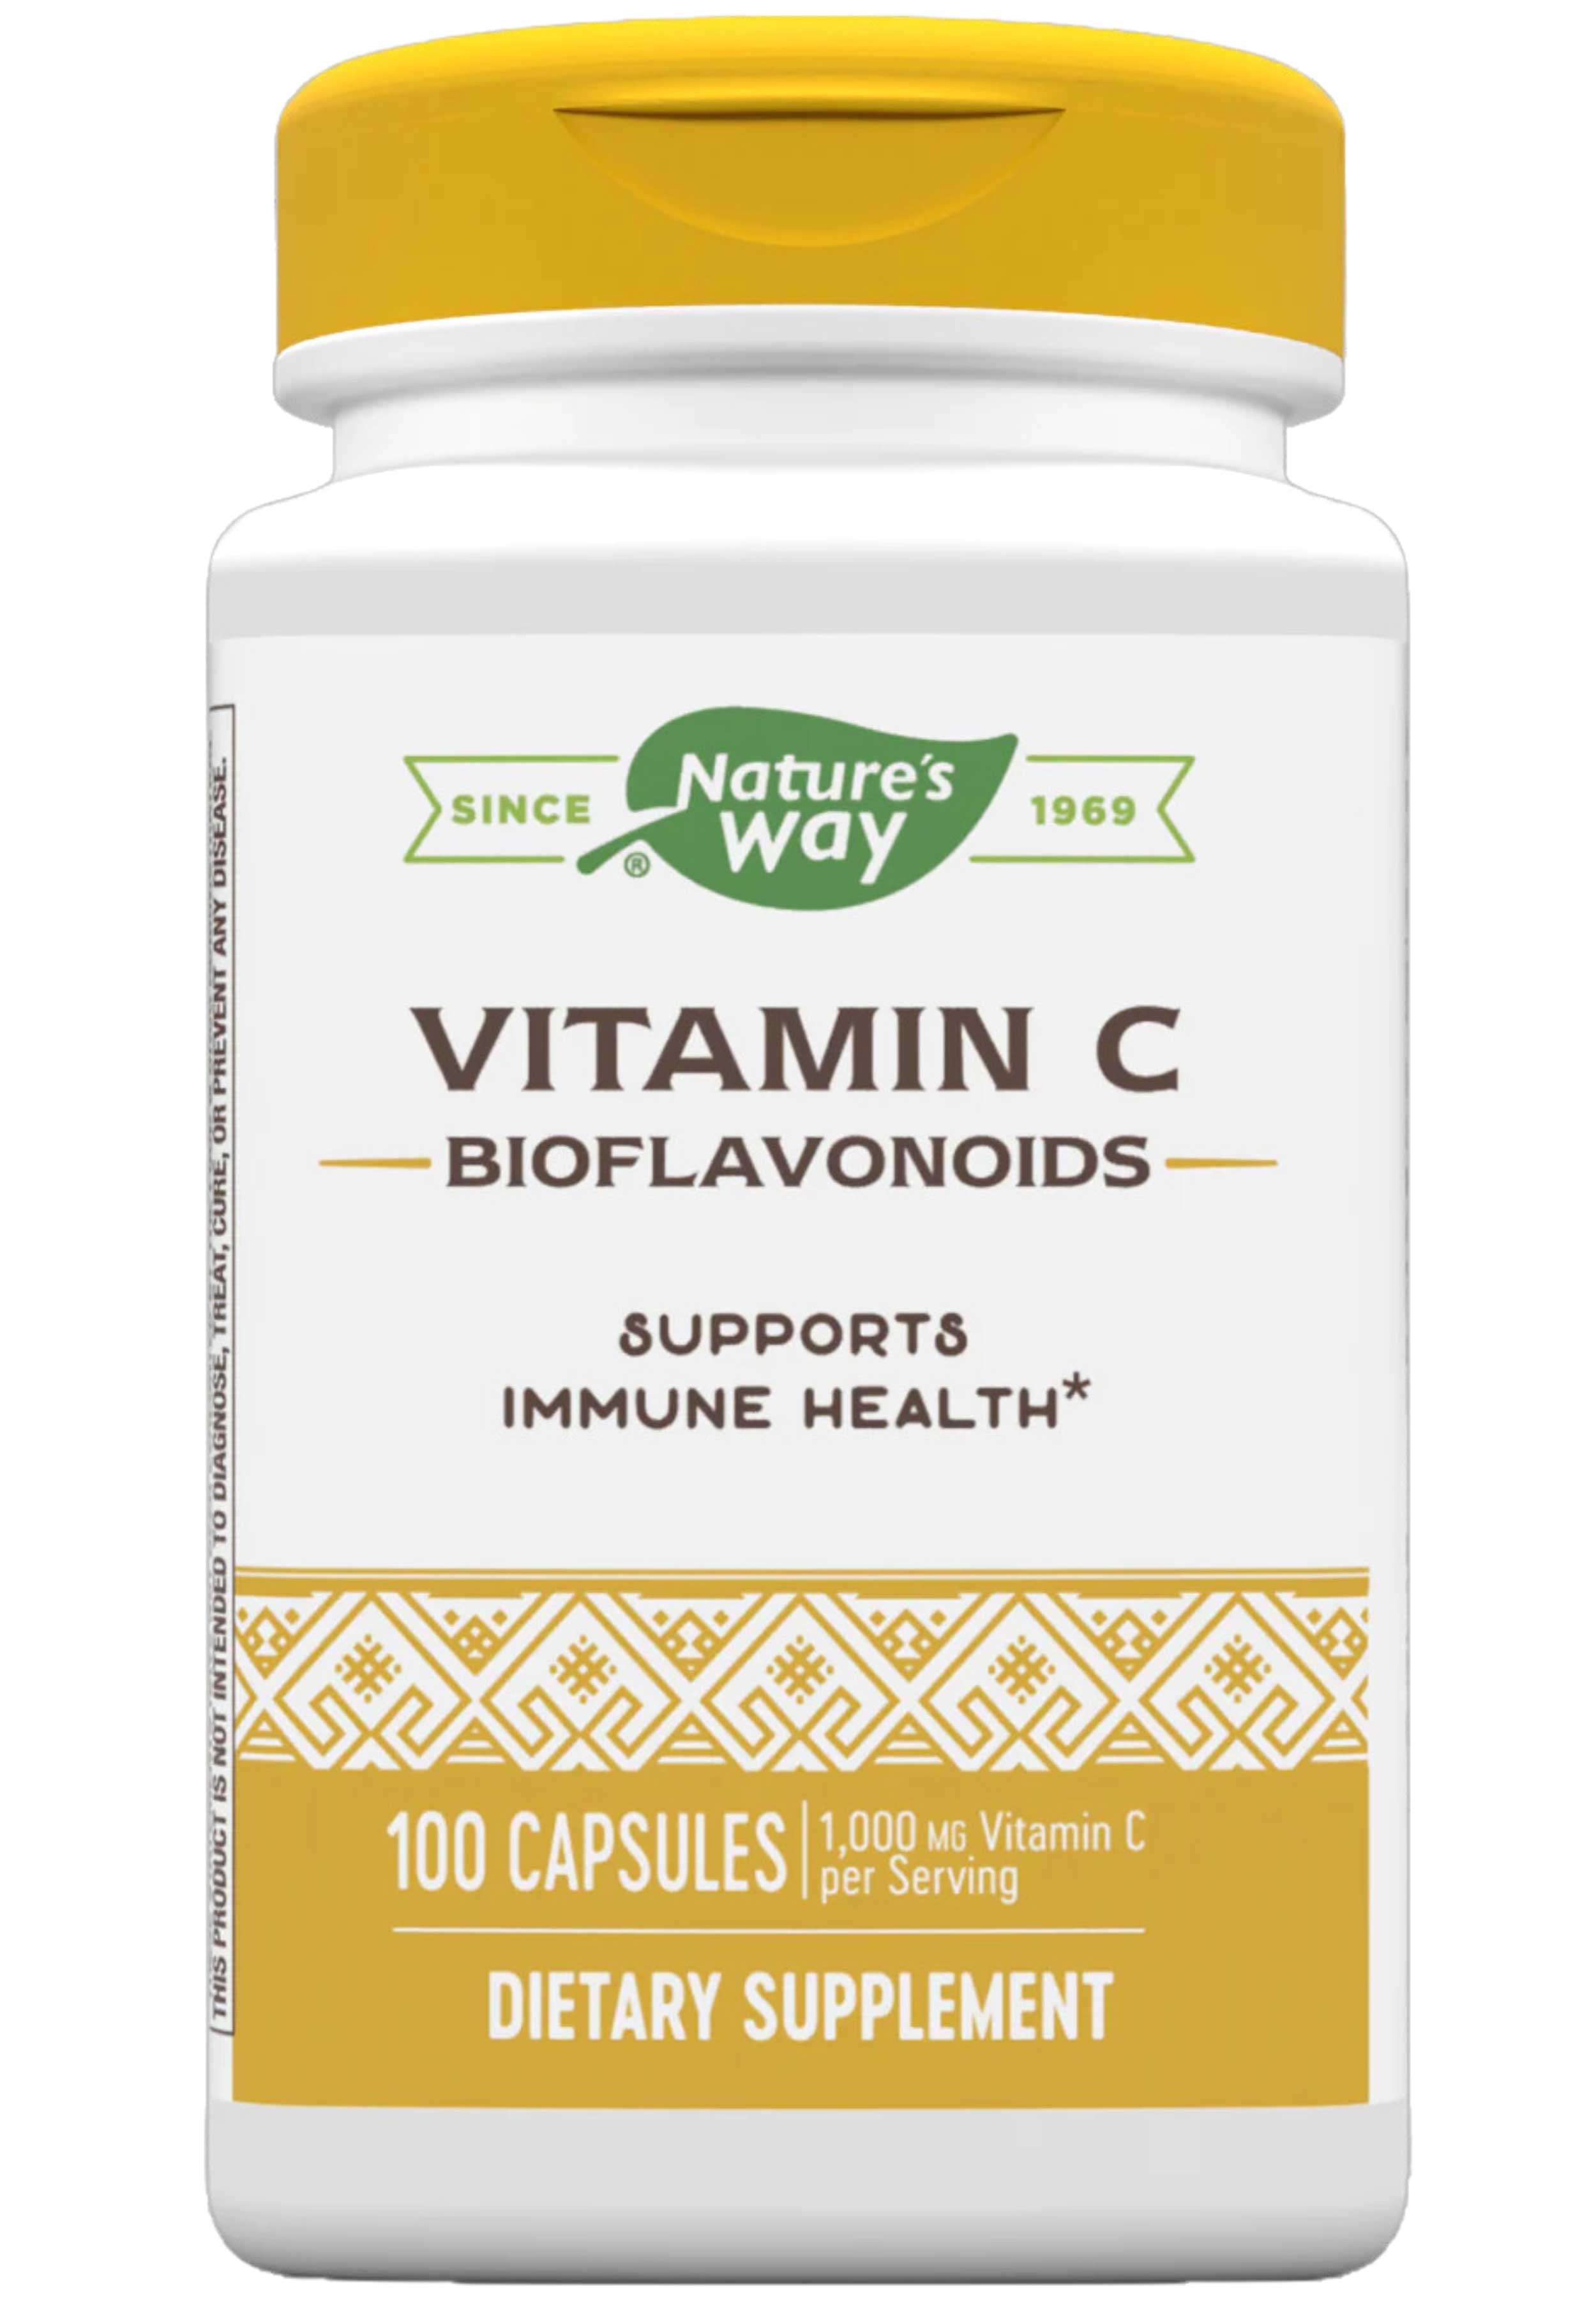 Nature's Way Vitamin C with Bioflavonoids